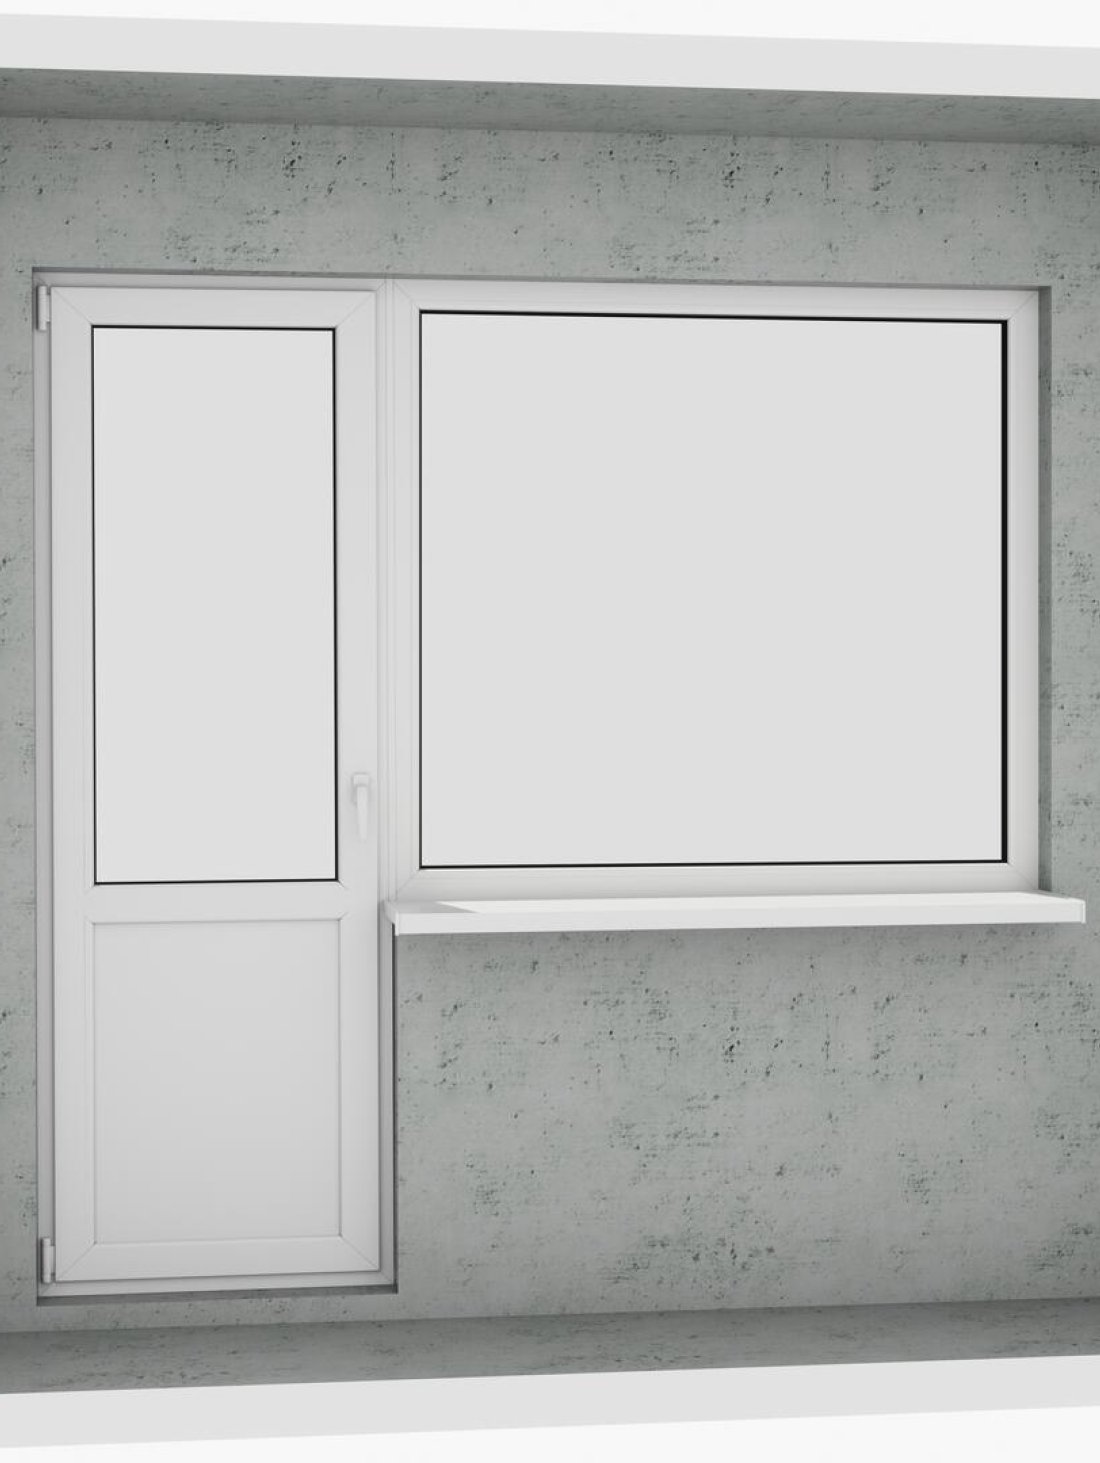 Вихід на лоджію (балкон): бюджетний класичний білий металопластиковий балконний блок (в двері є режим провітрювання, вікно не відкривається) - Паритет UA